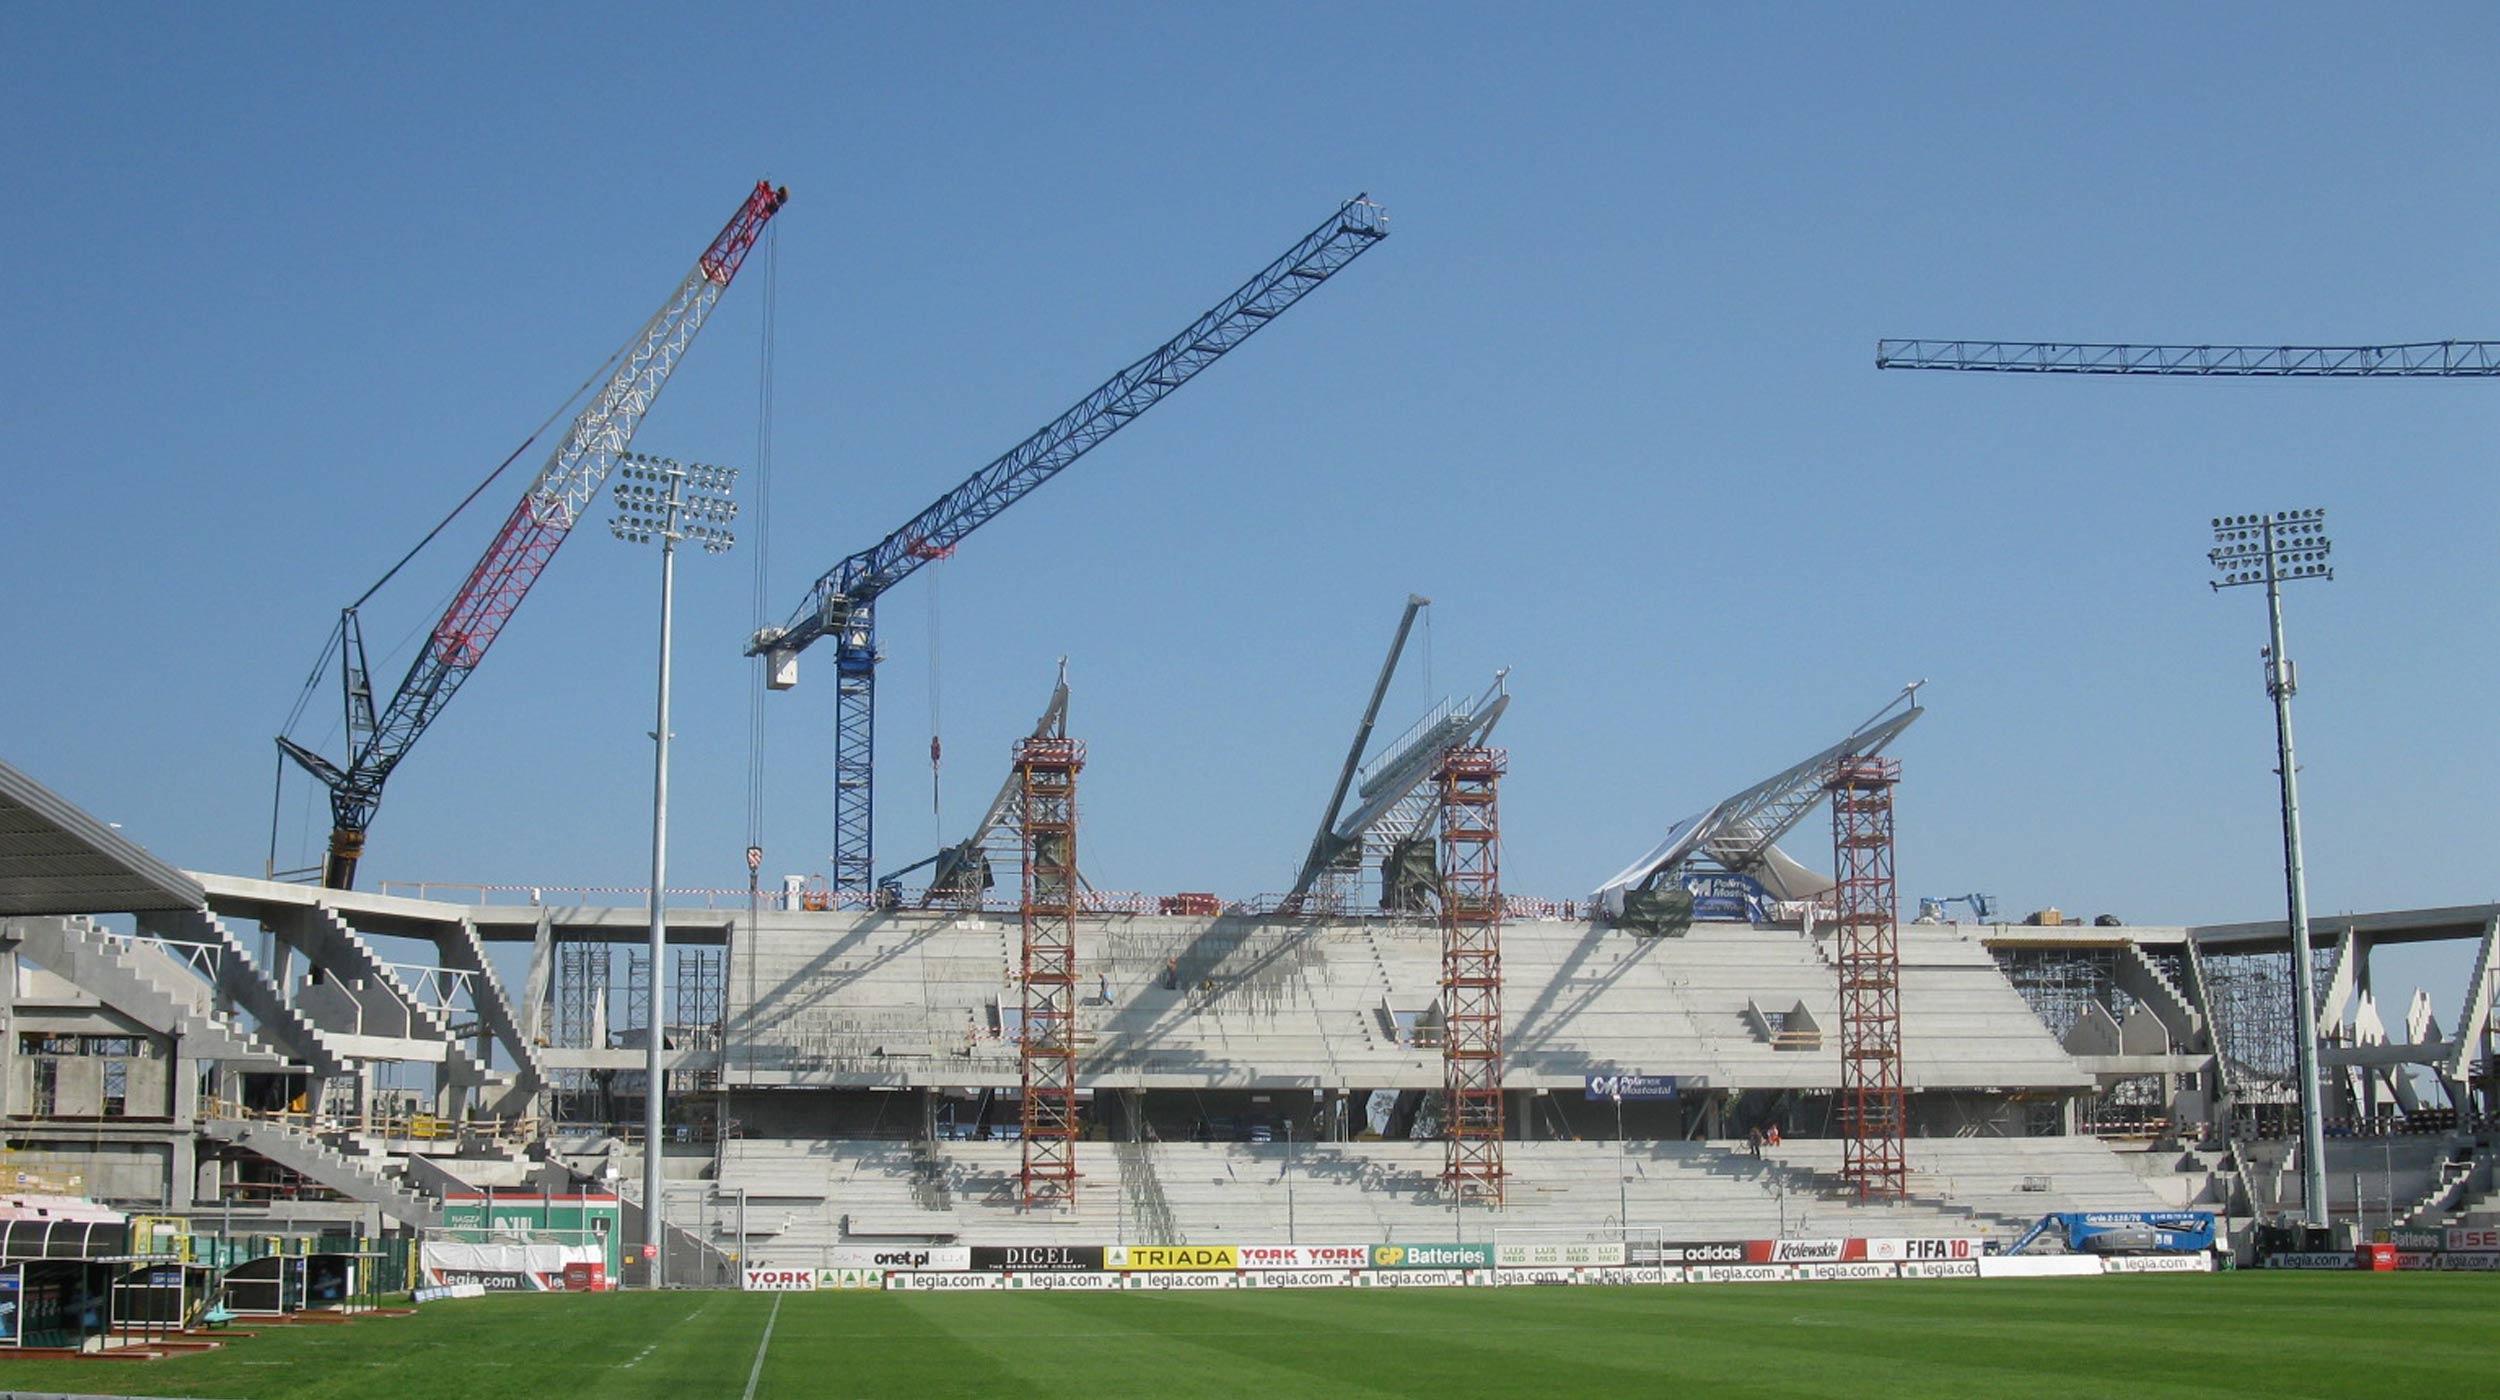 Celem rozbudowy i modernizacji stadionu Legii było spełnienie wymagań przewidzianych dla rozgrywek pucharu UEFA oraz Ligi Mistrzow.